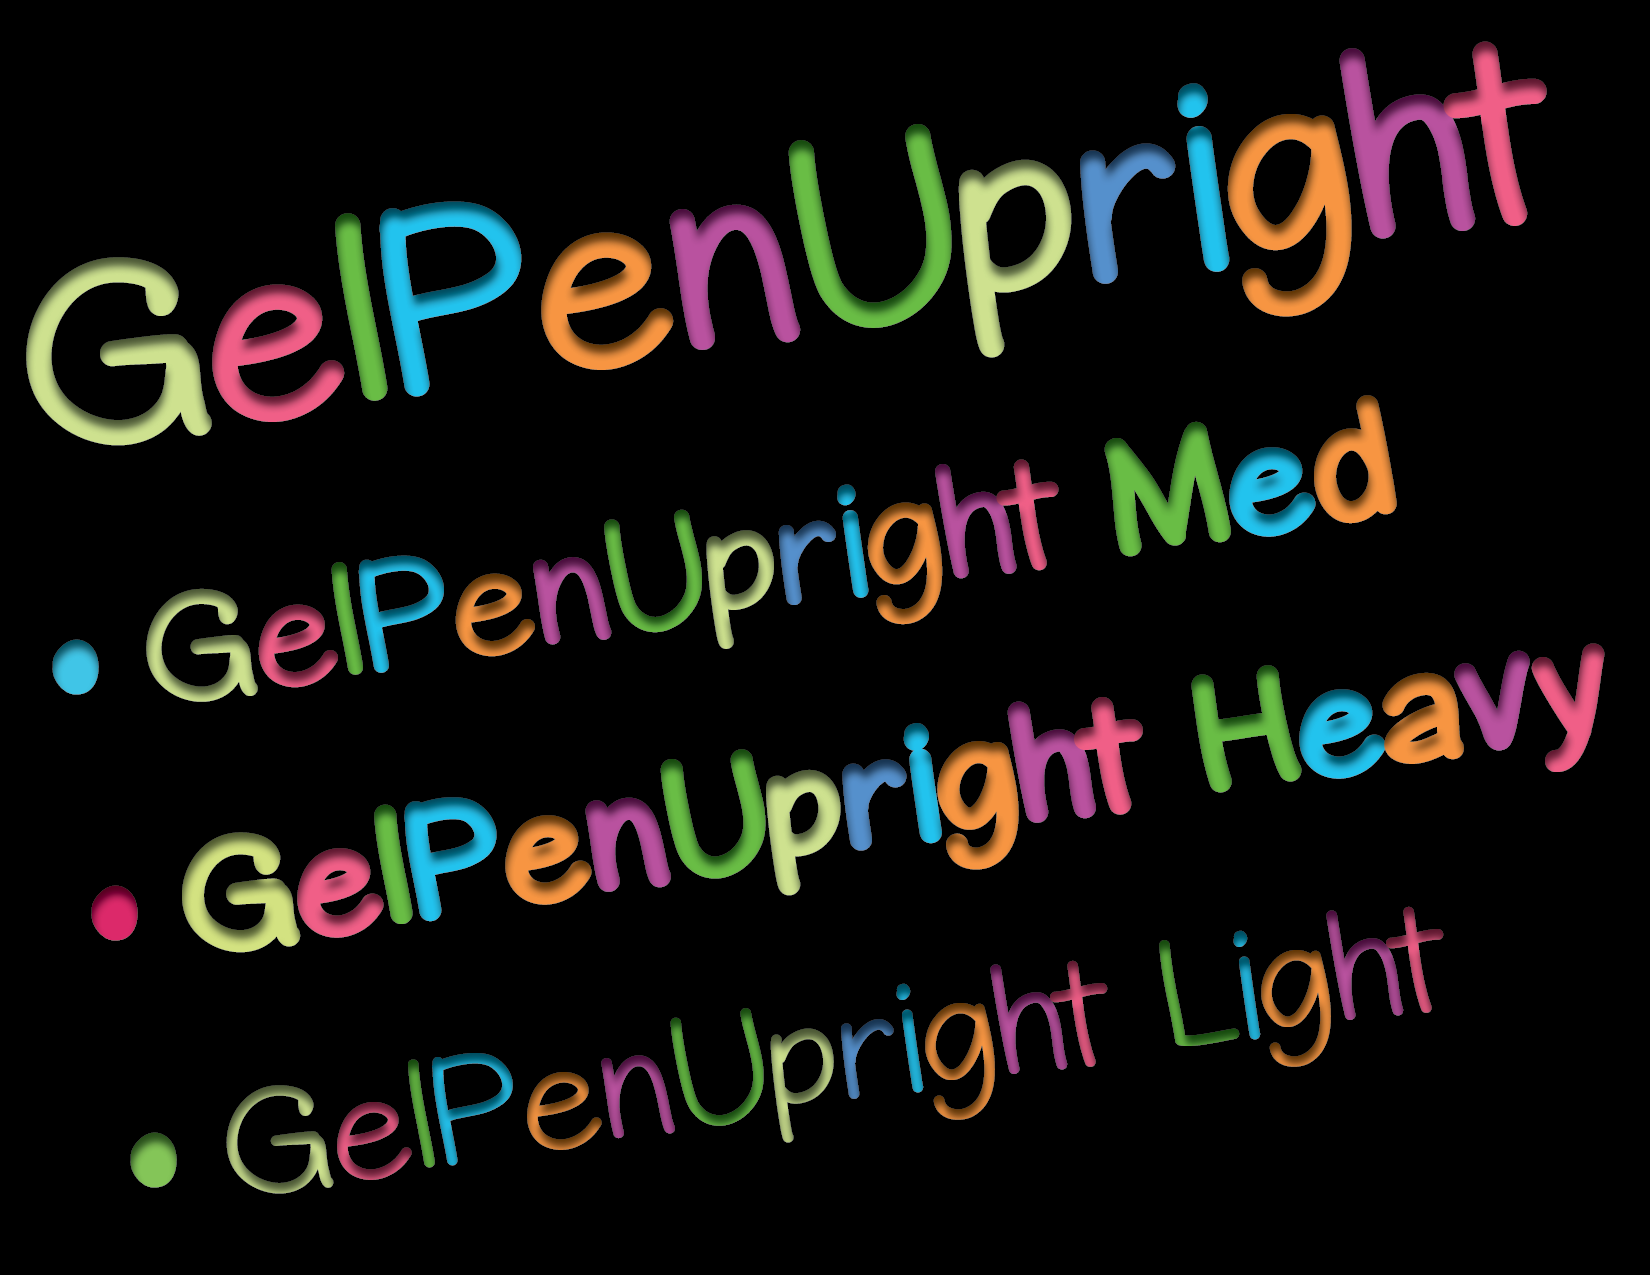 GelPenUpright